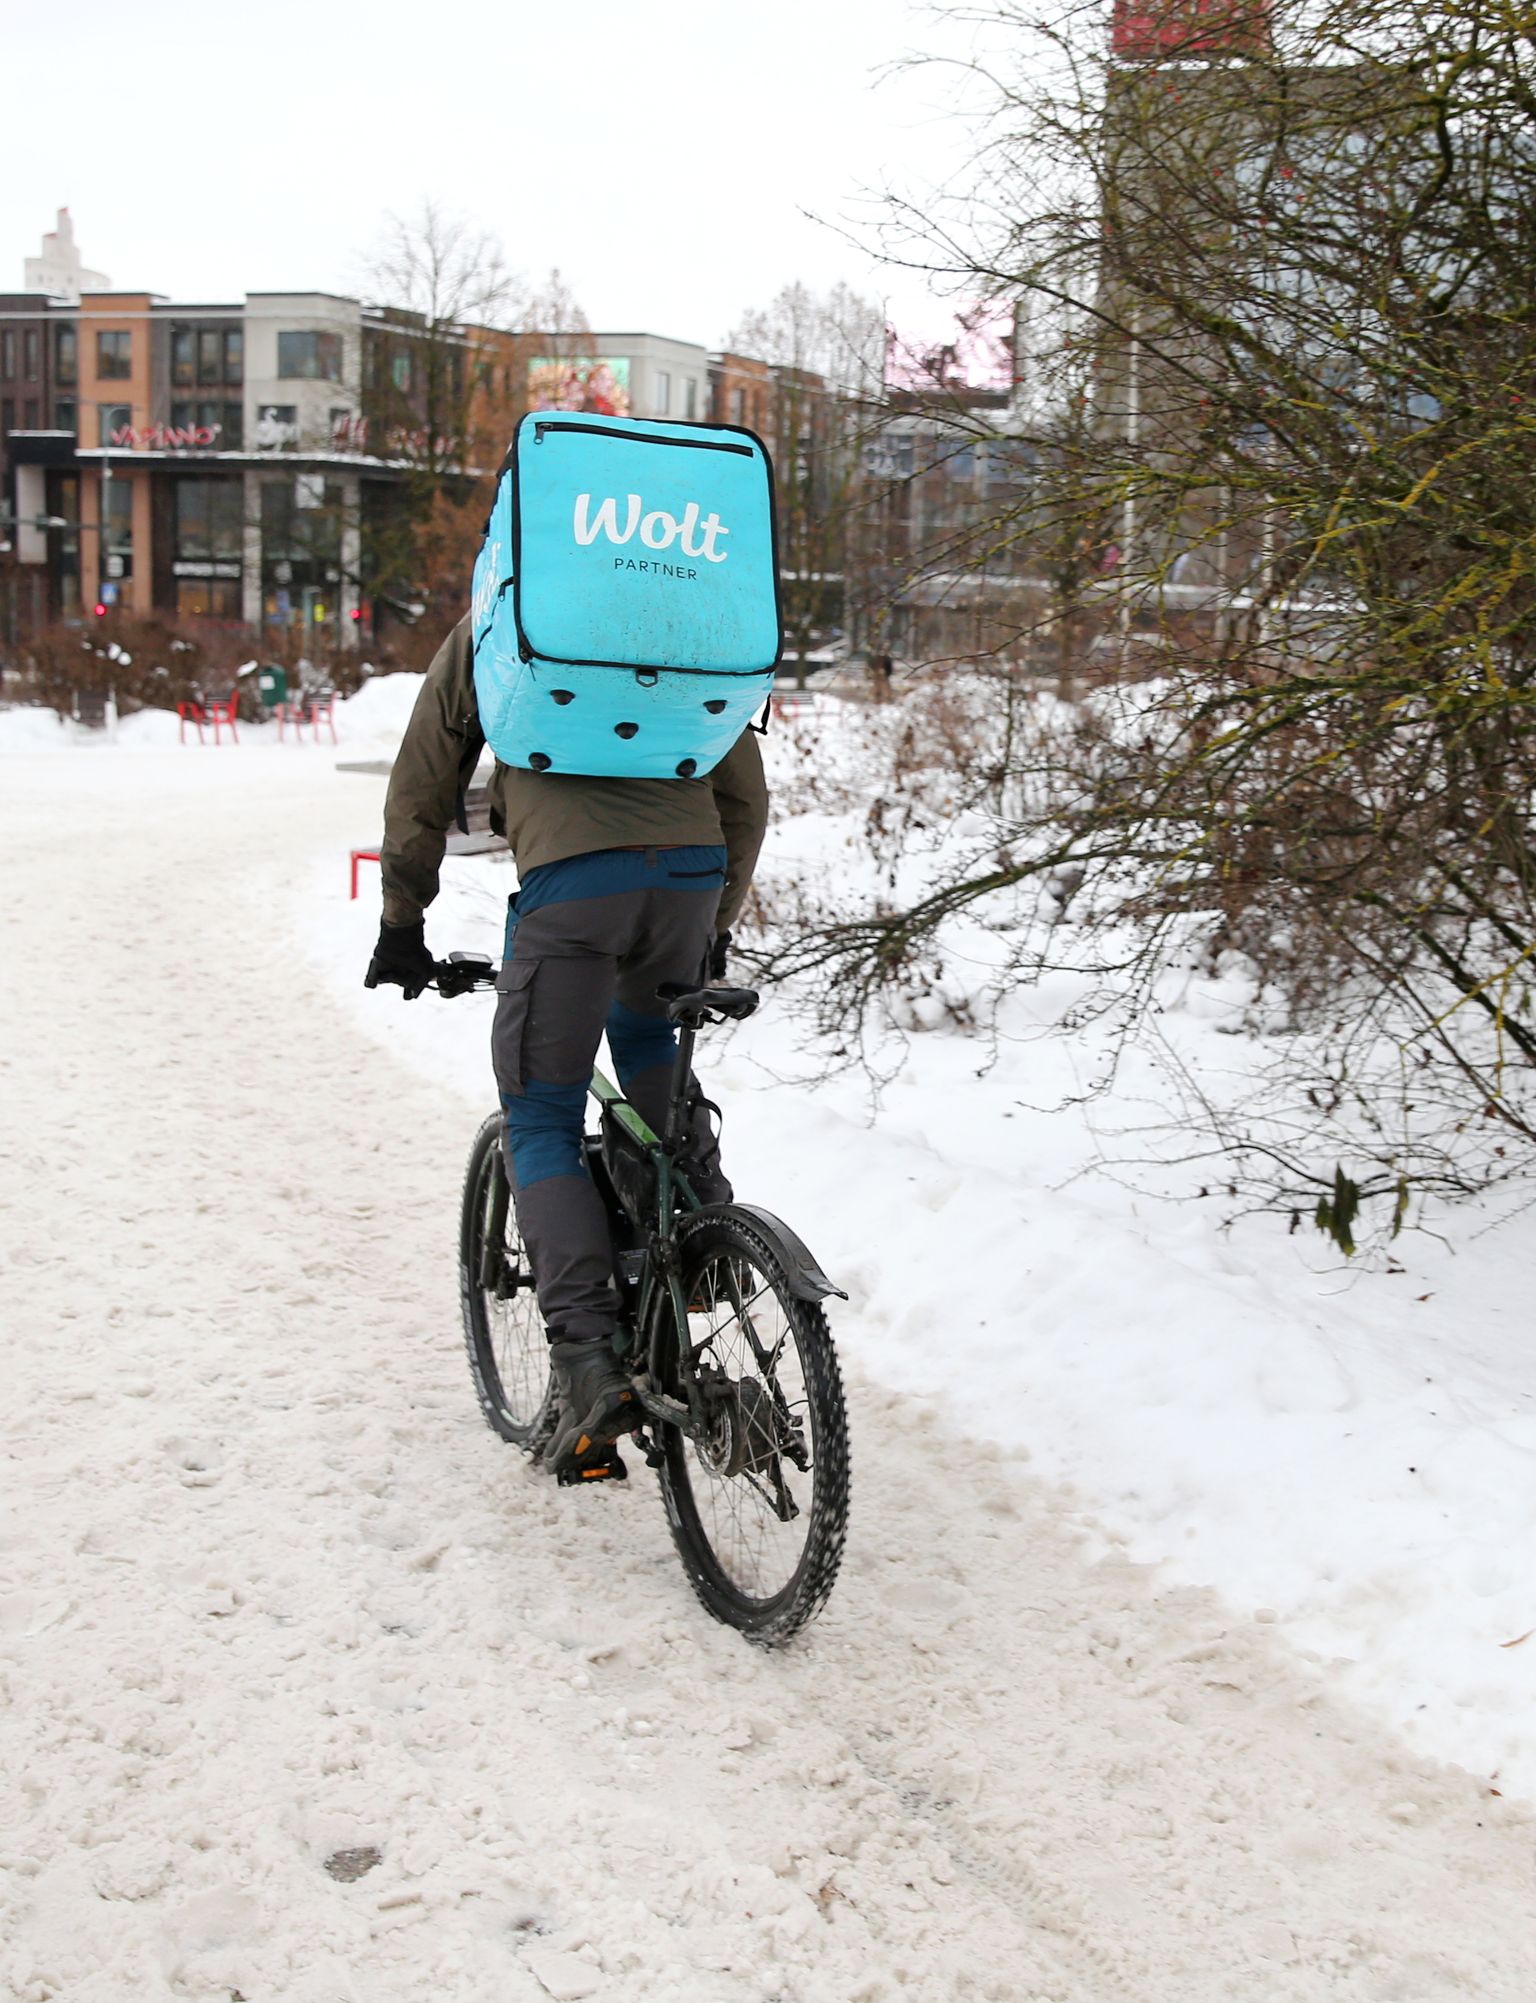 Wolti kuller liiklemas Tartu lumistel tänavatel.